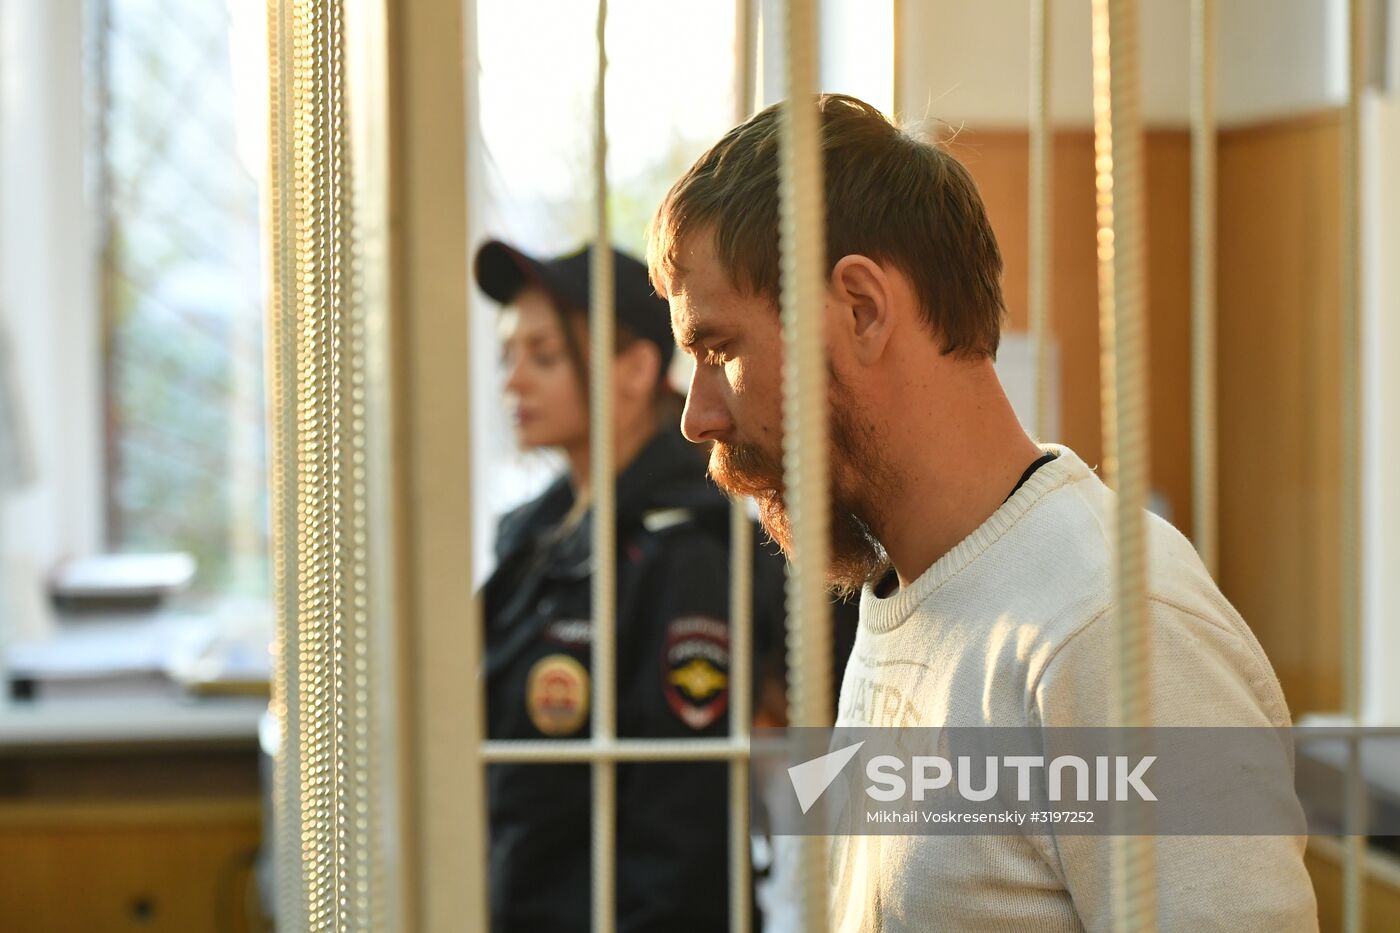 Christian State leader Alexander Kalinin arrested